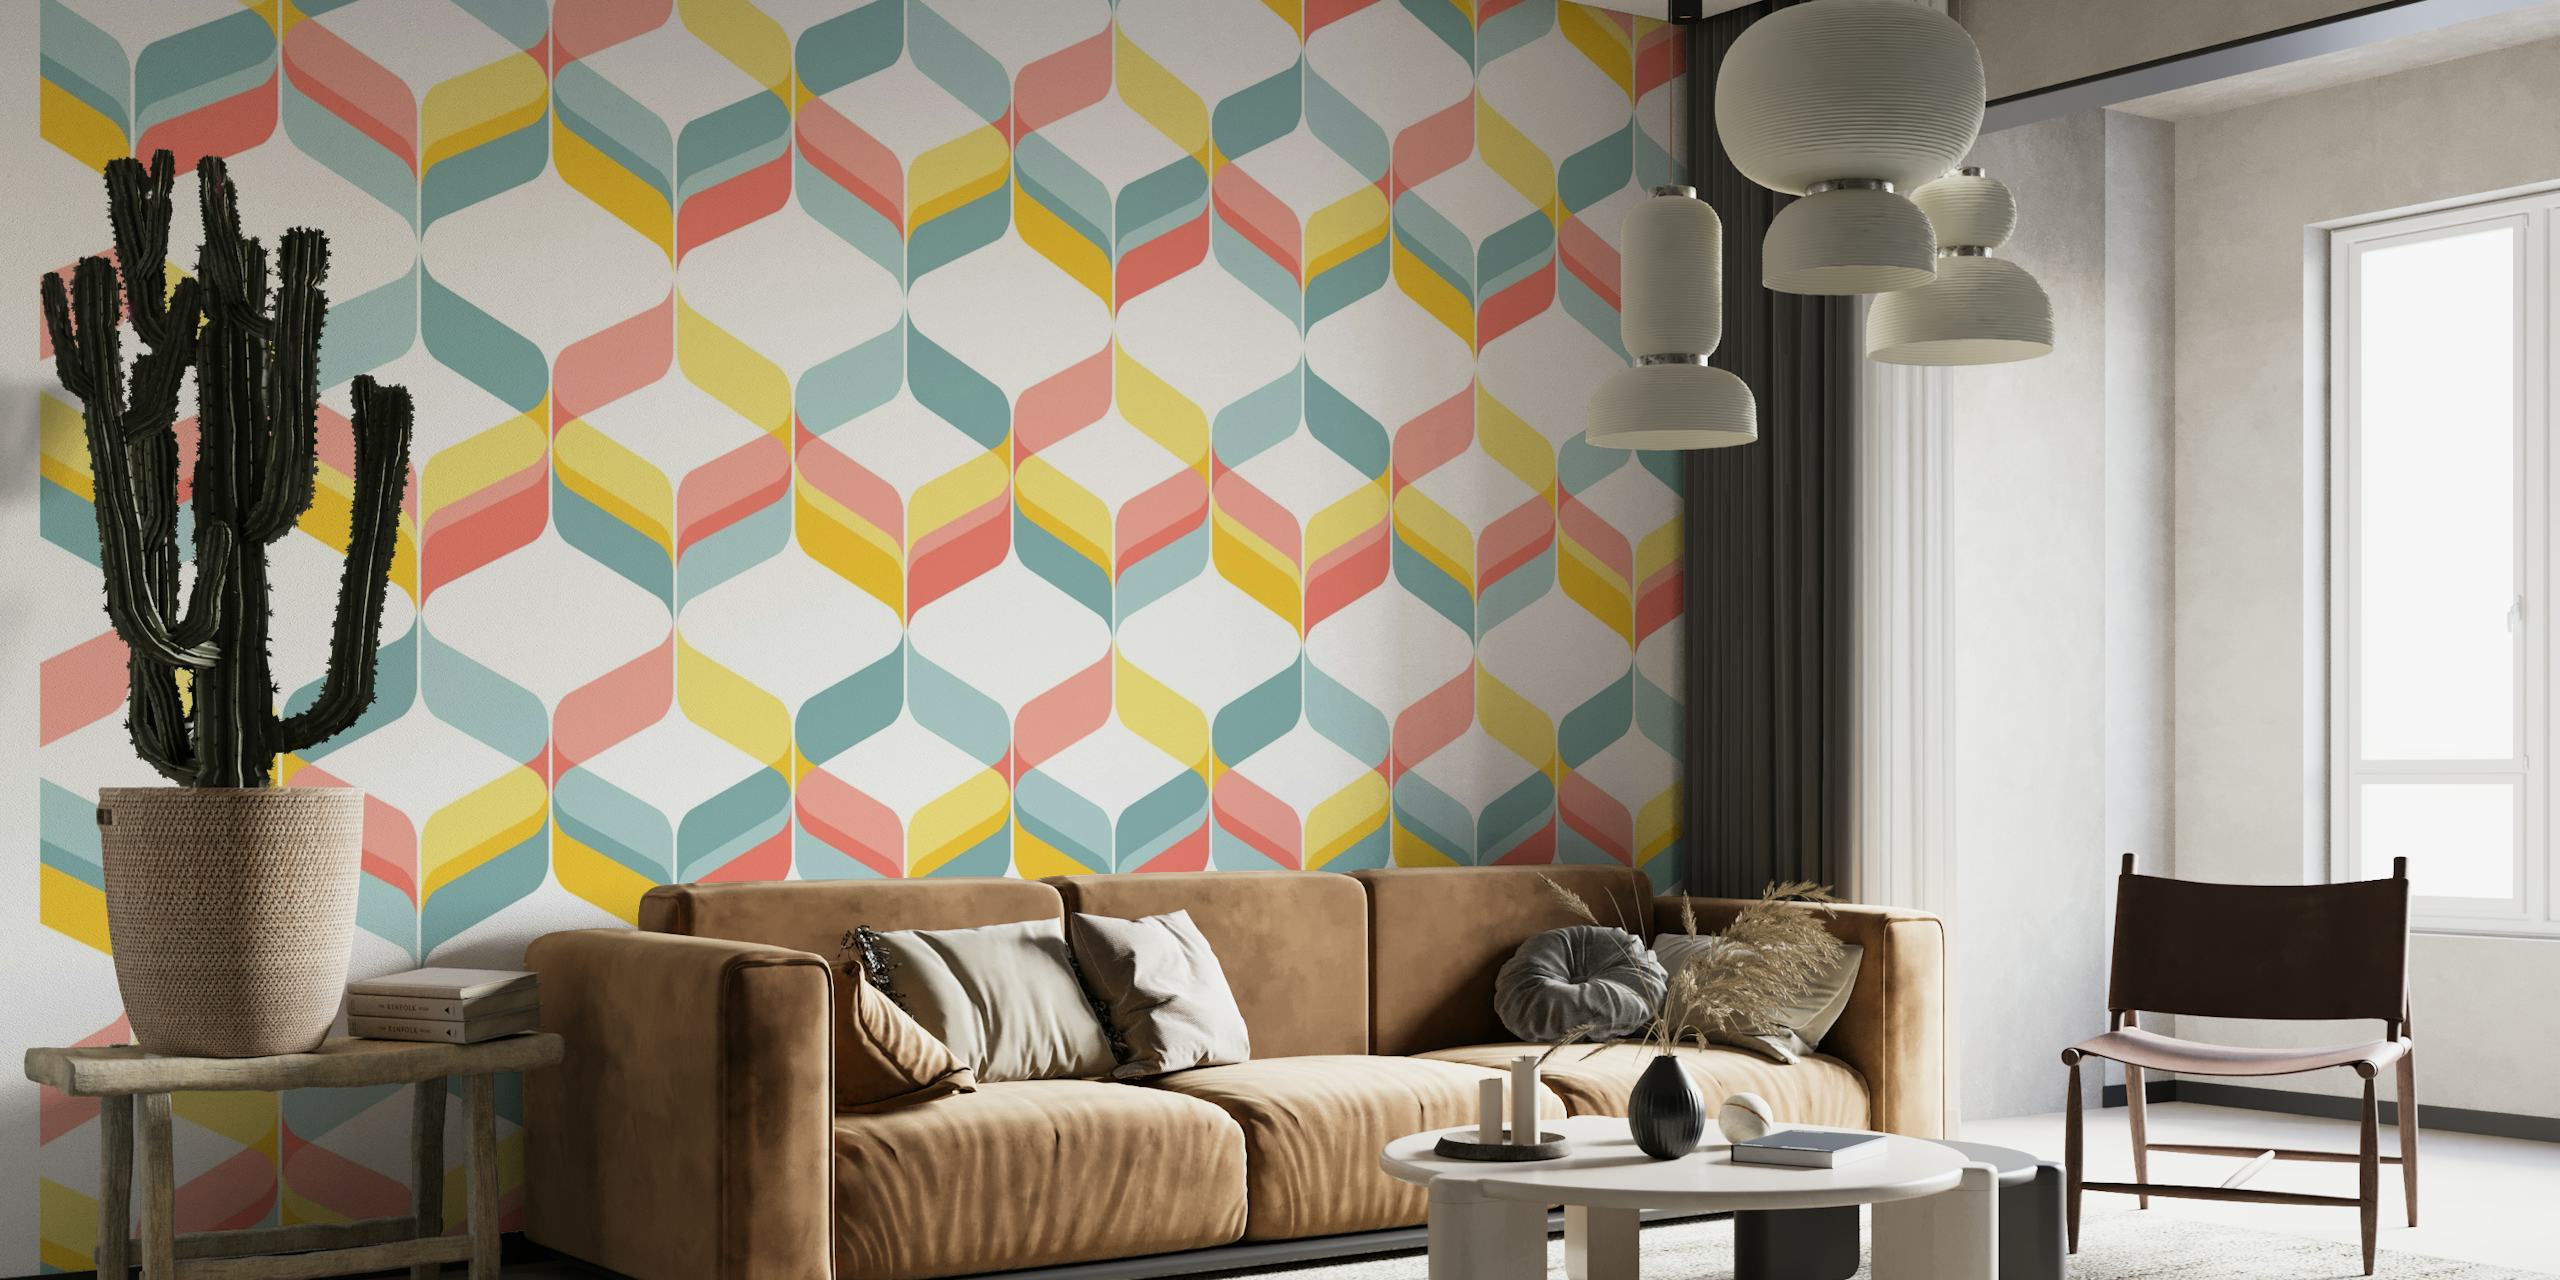 Pastelkleurige geometrische linten muurschildering in een retro mod-ontwerp